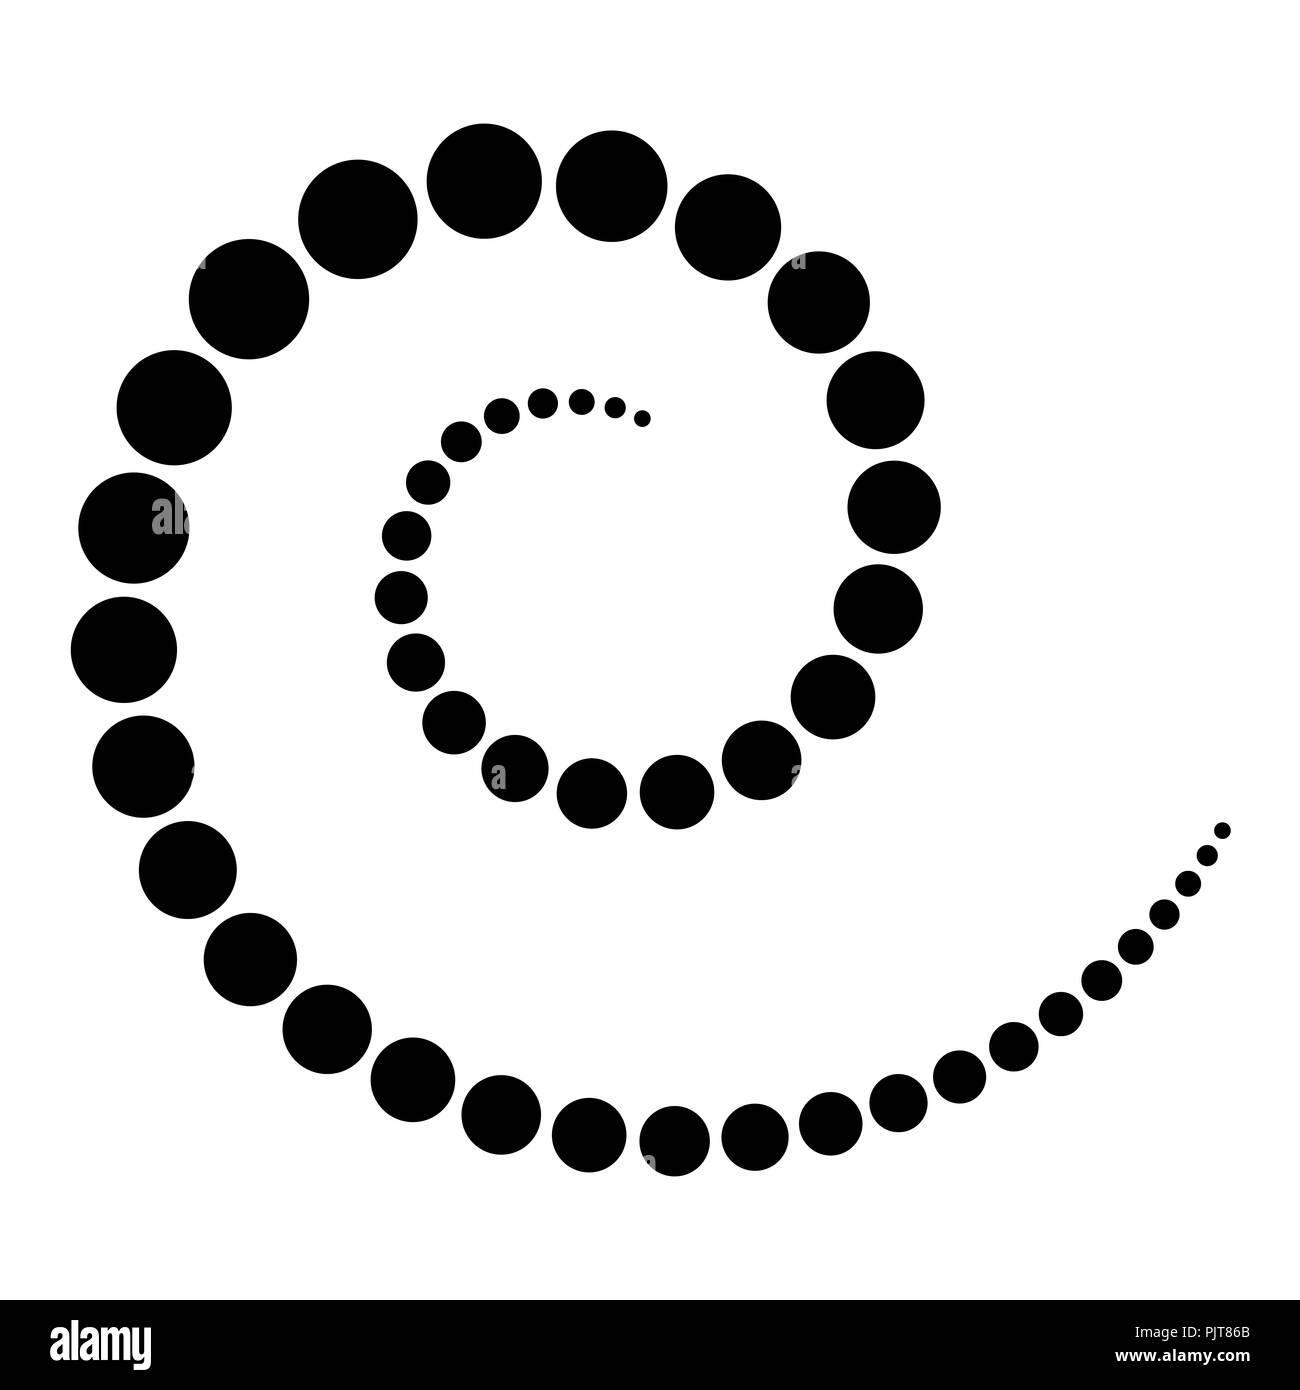 Spirale aus schwarzen Punkten. Die Punkte aus der Mitte der Spirale, die dann wieder kleiner werden. Schwarz isoliert Abbildung auf Weiß. Stockfoto